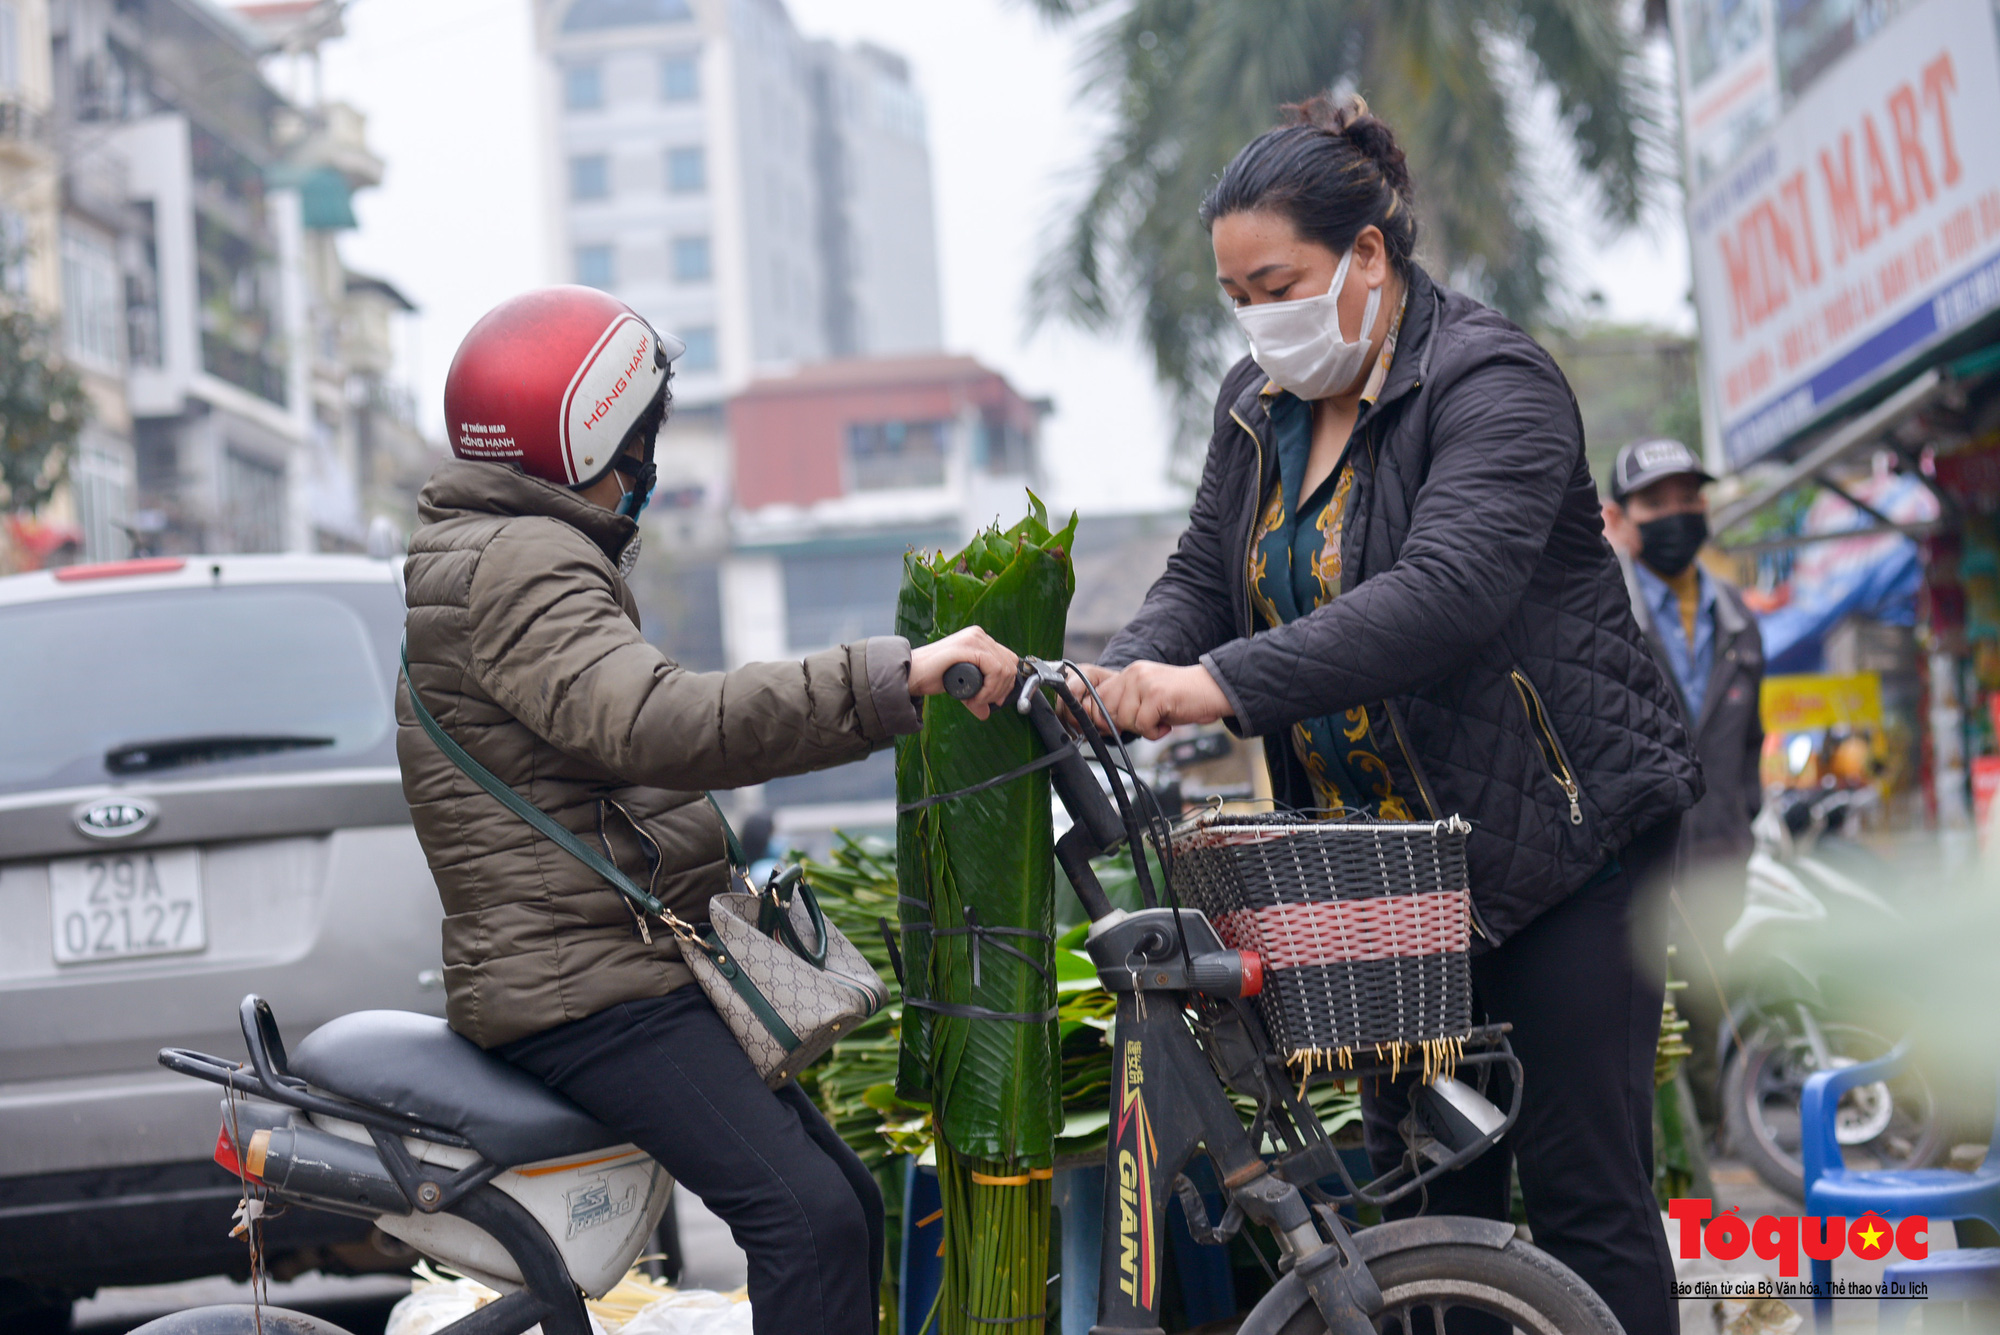 Chợ lá dong lâu đời ở Hà Nội ảm đạm những ngày cuối năm - Ảnh 7.